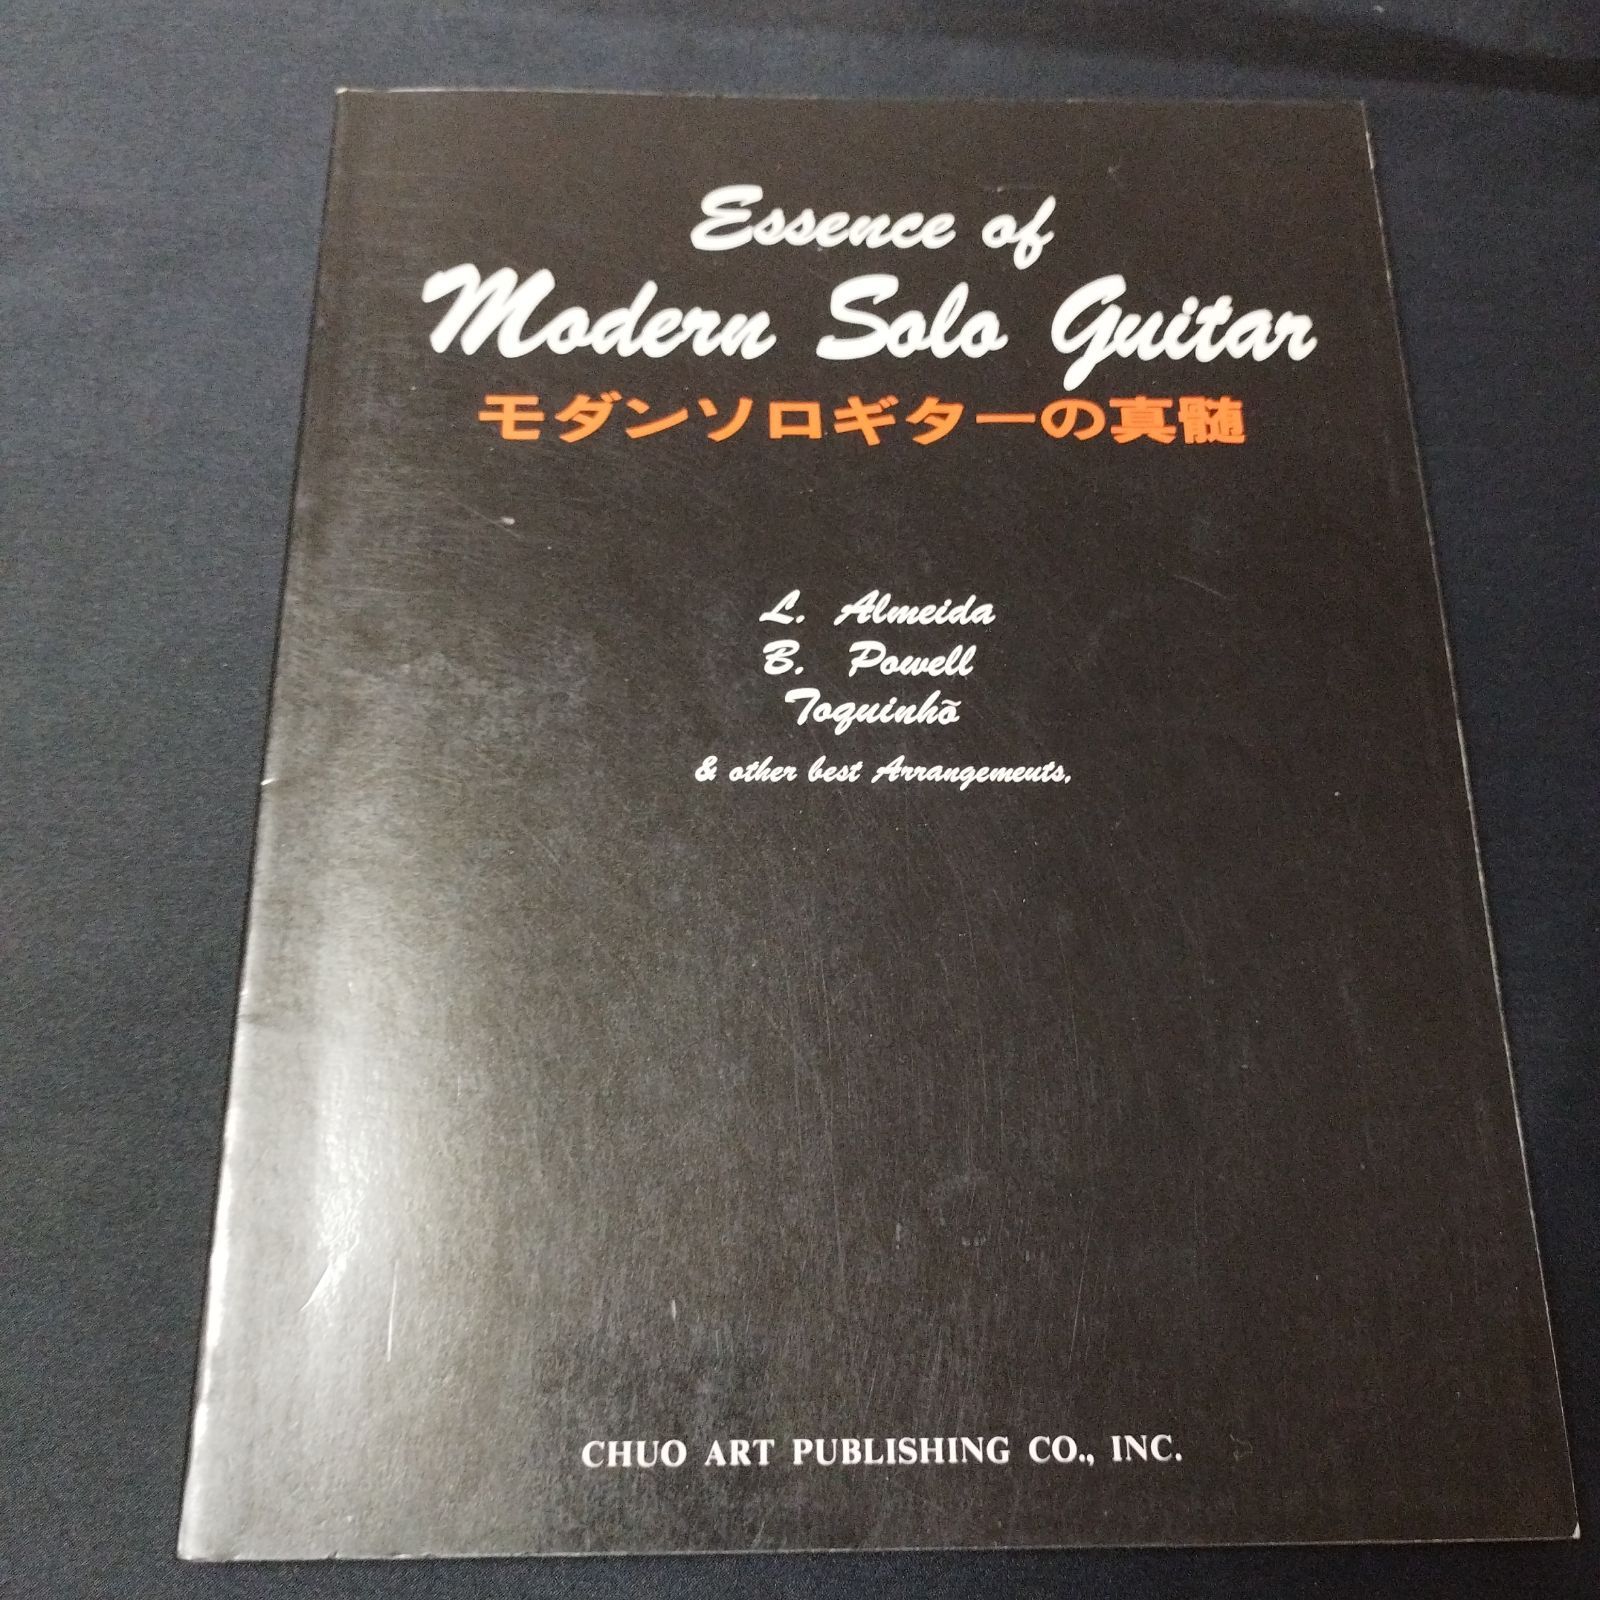 ギター モダンソロギターの真髄 斉藤まもる監修 1979年発行 楽譜 棚MA3